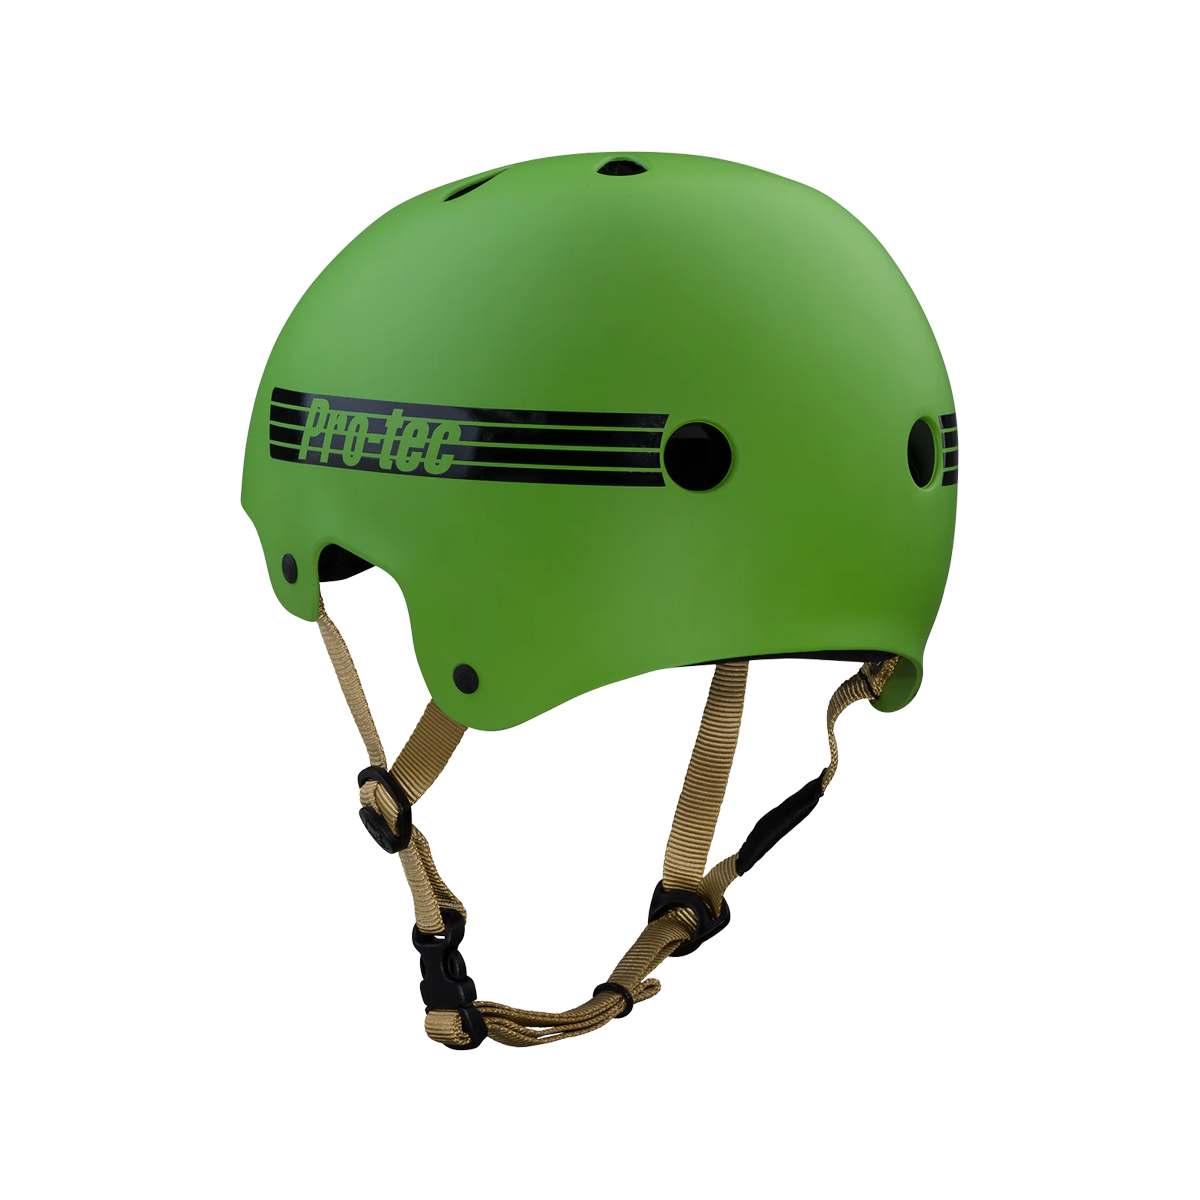 Pro Tec Old School Skate Helmet - Matte Seaweed